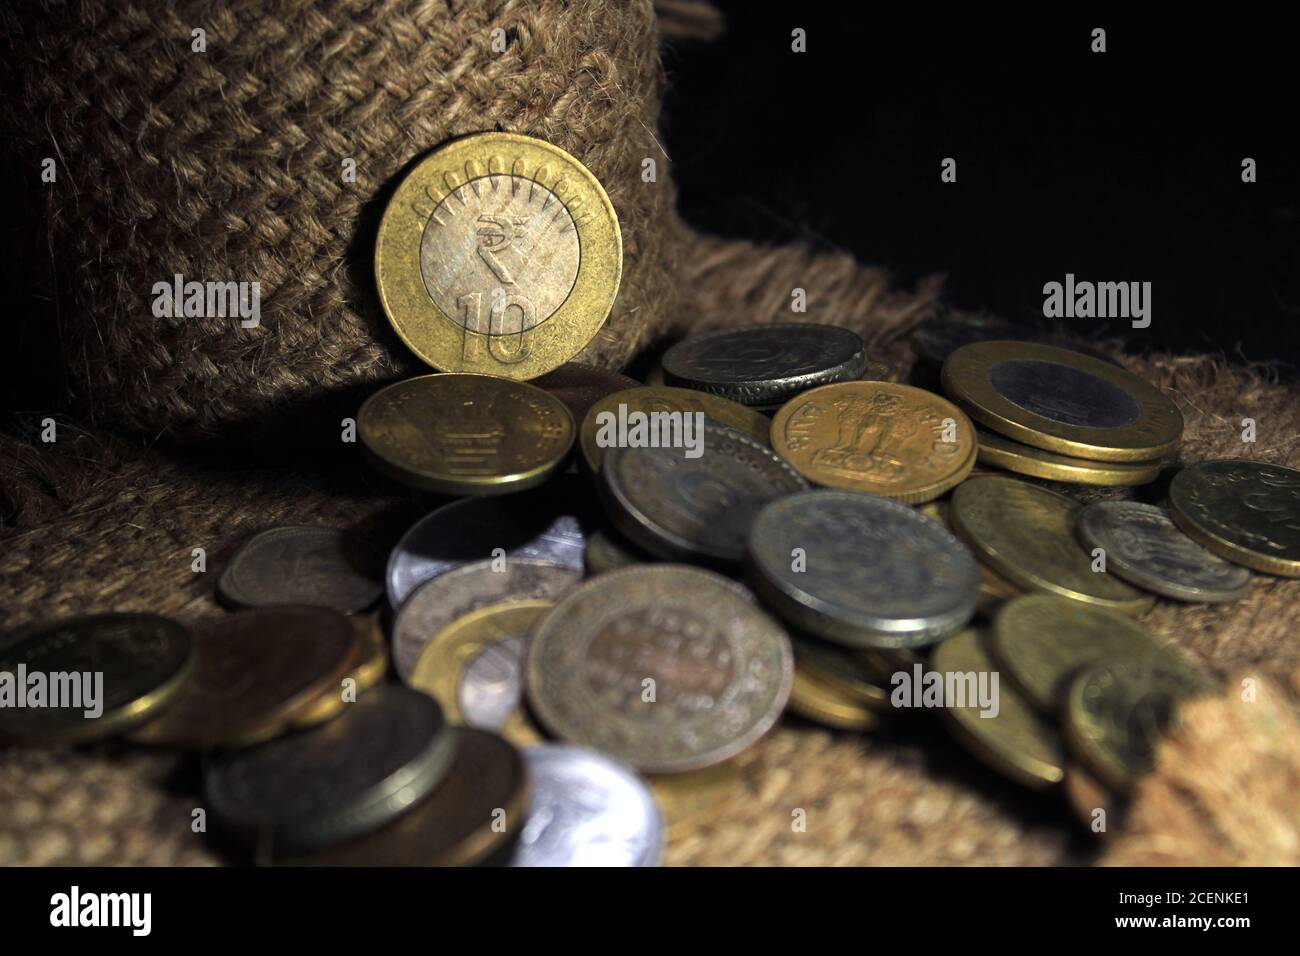 Pile de 1, 2, 5, 10 monnaie en métal roupie indienne isolée sur fond de sac. Concept d'investissement financier, économique, bancaire et d'échange. Banque D'Images